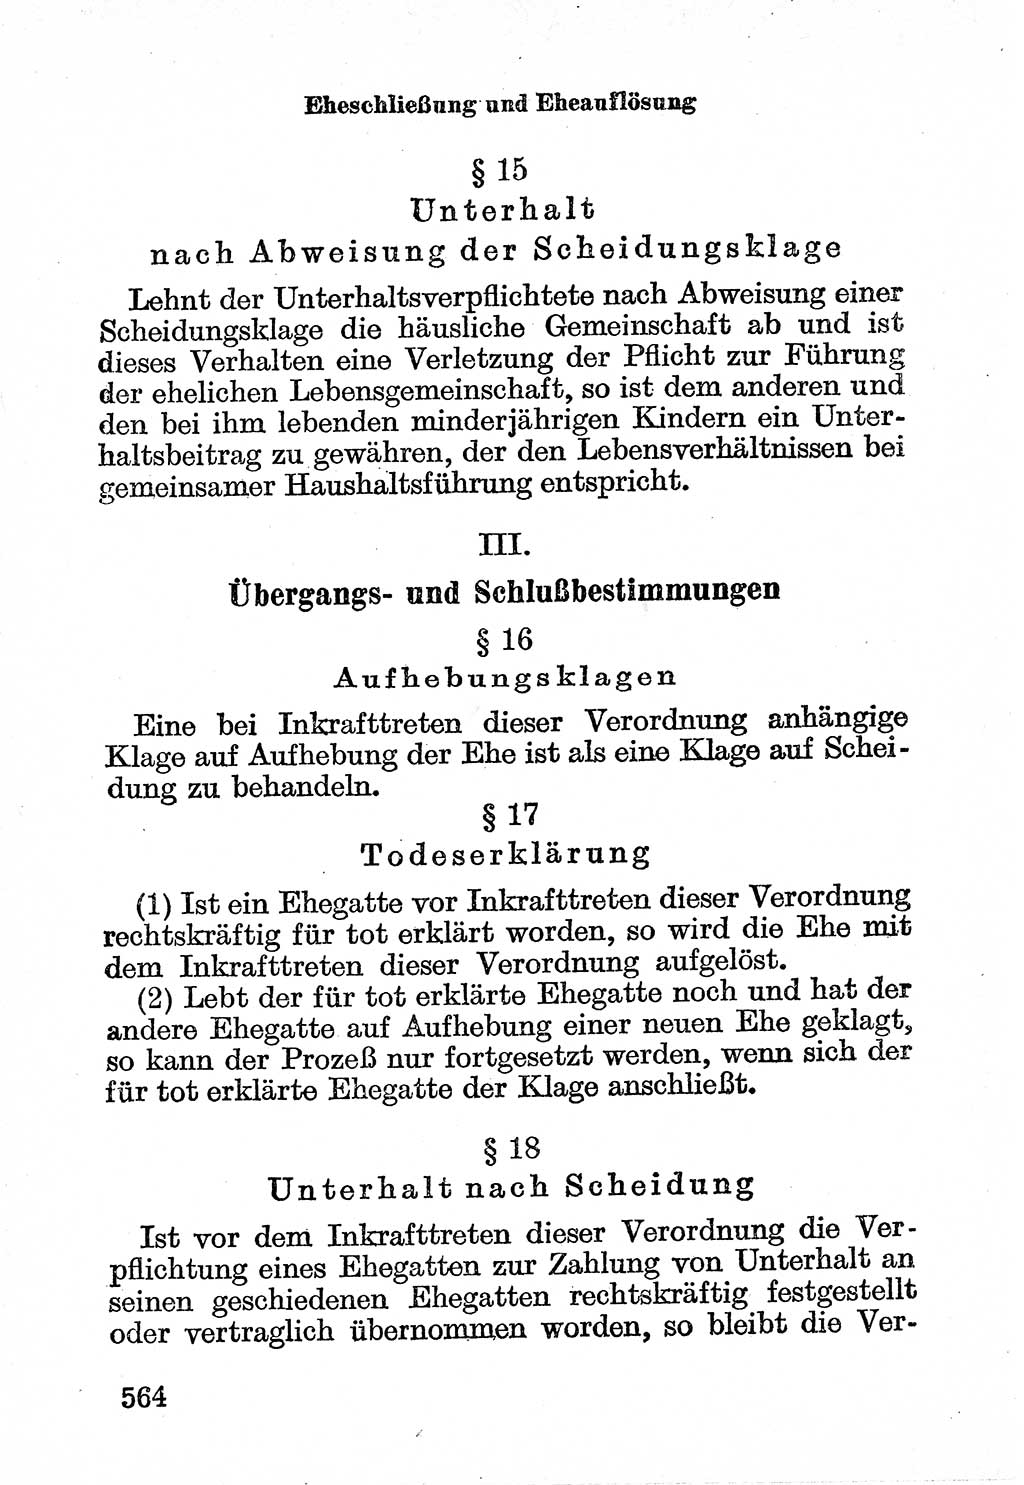 Bürgerliches Gesetzbuch (BGB) nebst wichtigen Nebengesetzen [Deutsche Demokratische Republik (DDR)] 1956, Seite 564 (BGB Nebenges. DDR 1956, S. 564)